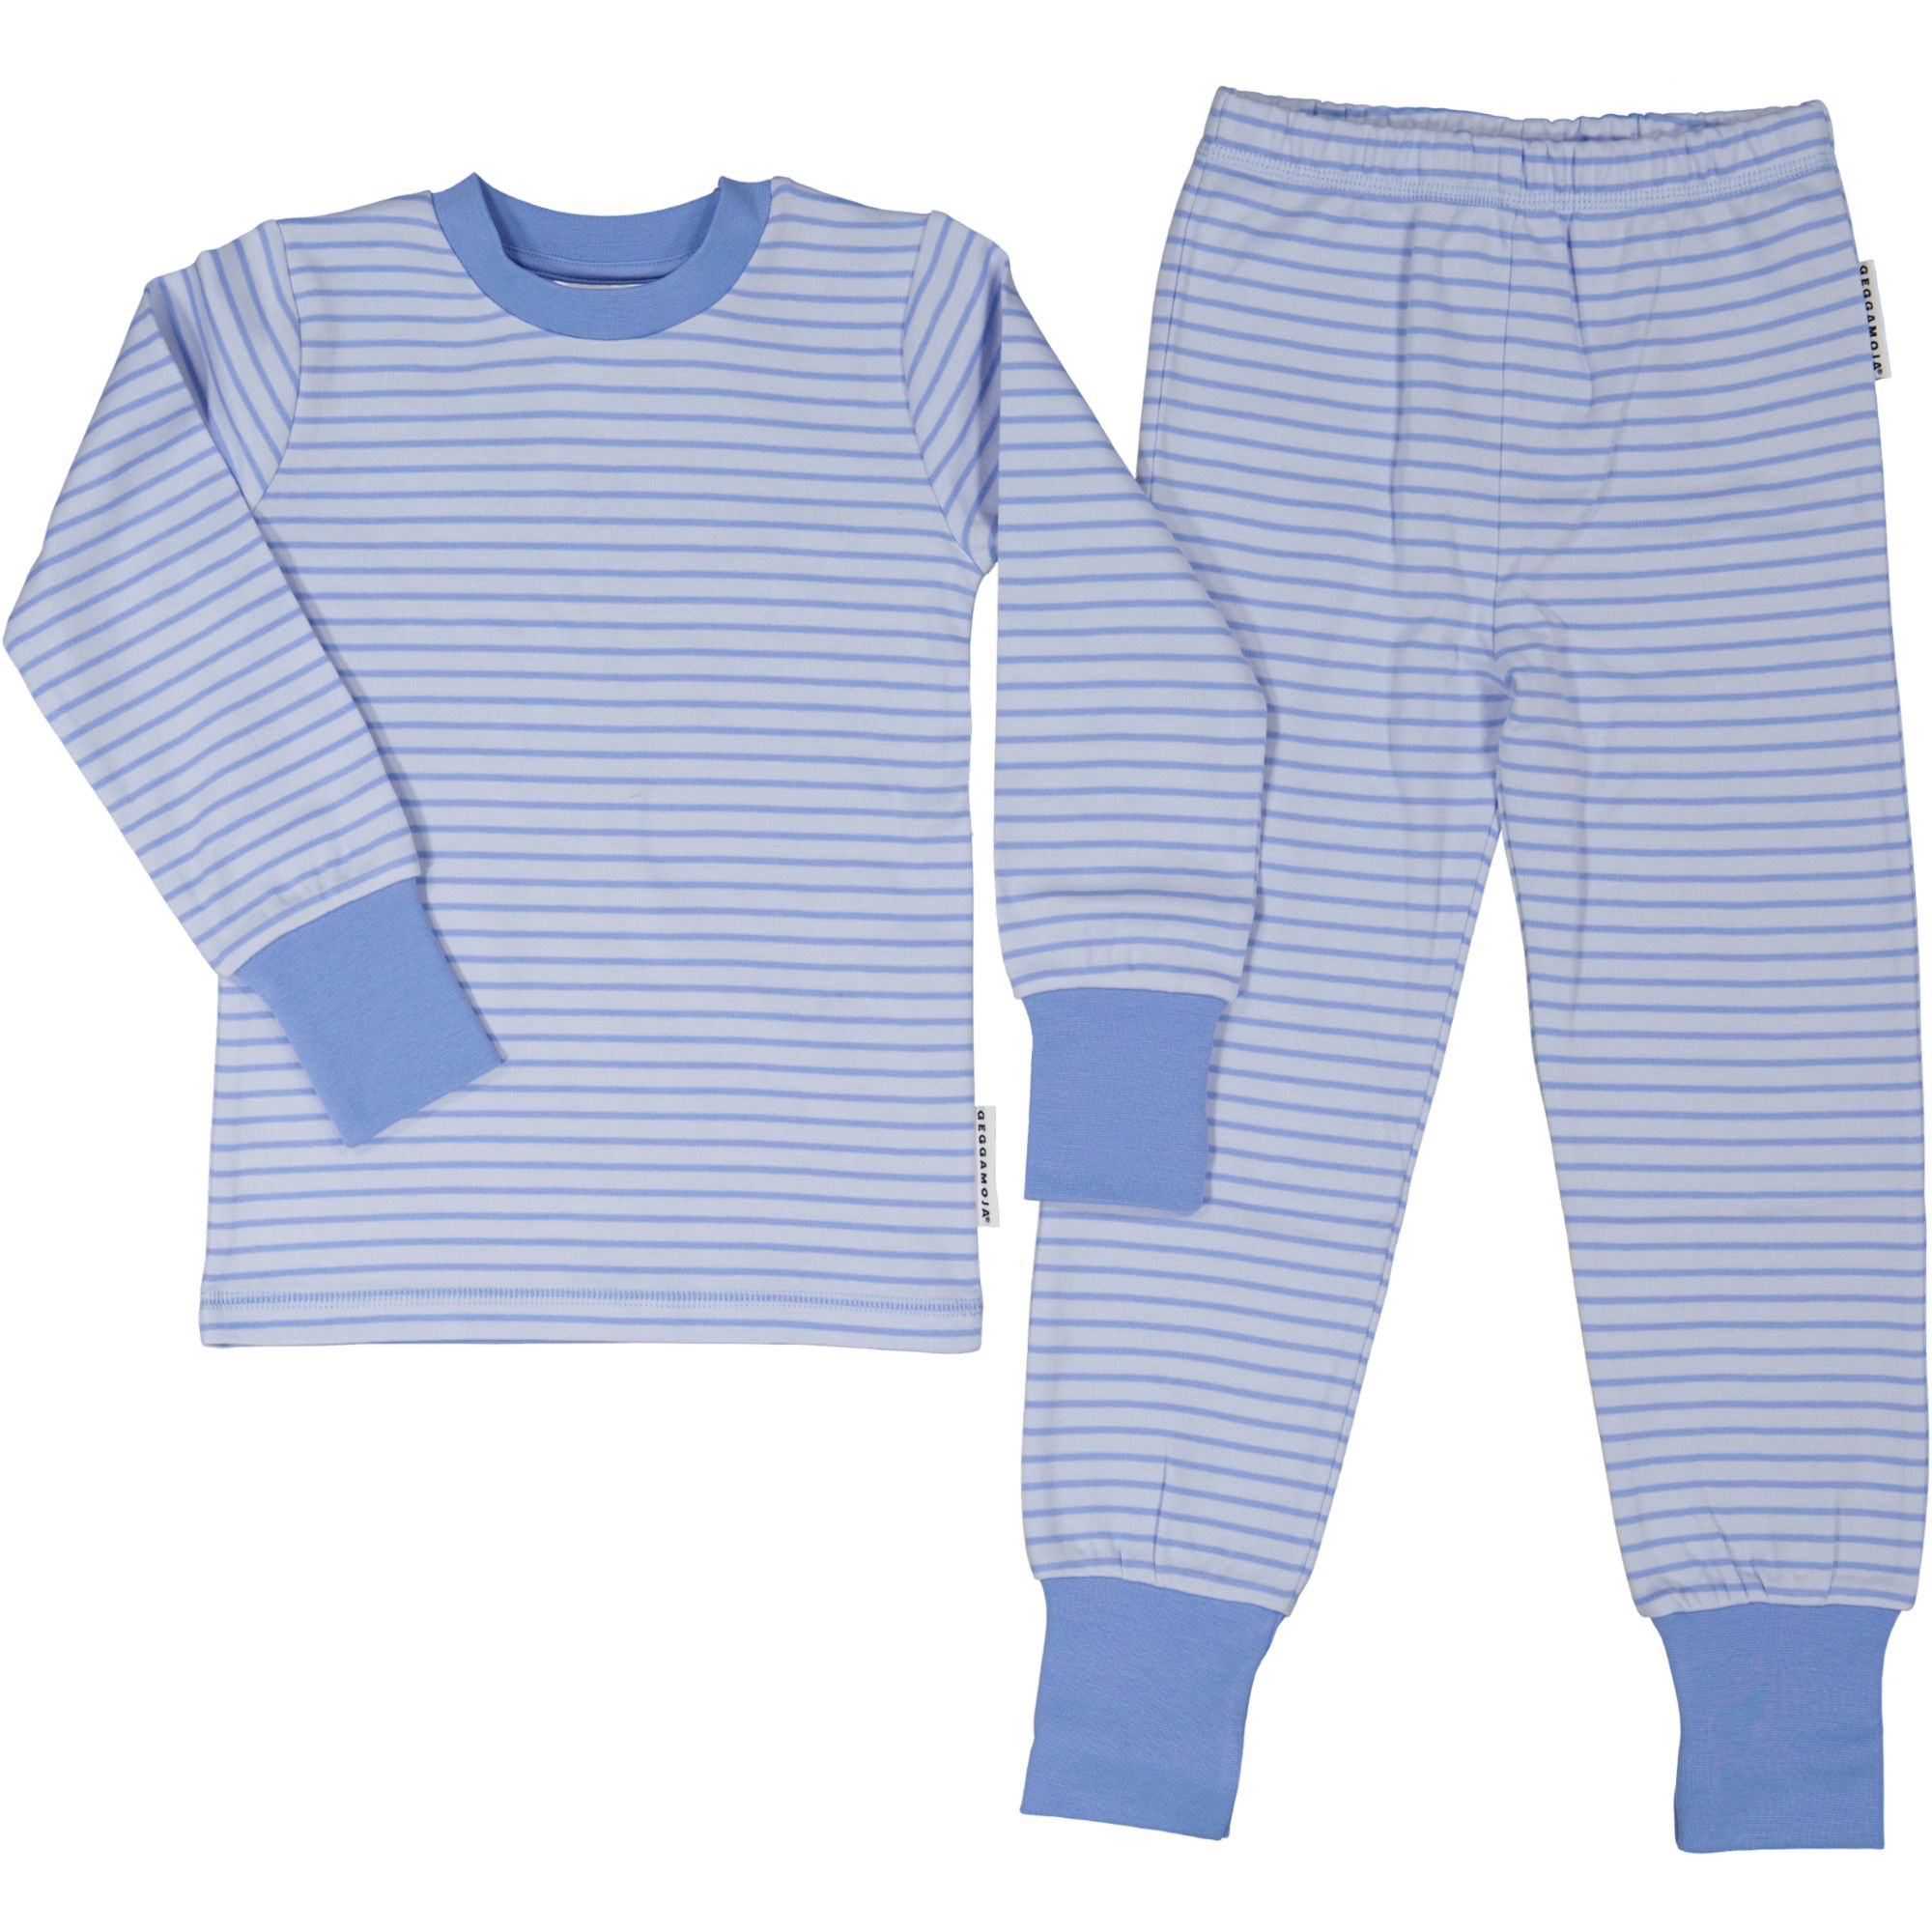 Two pcs pyjamas Light blue/blue  110/116